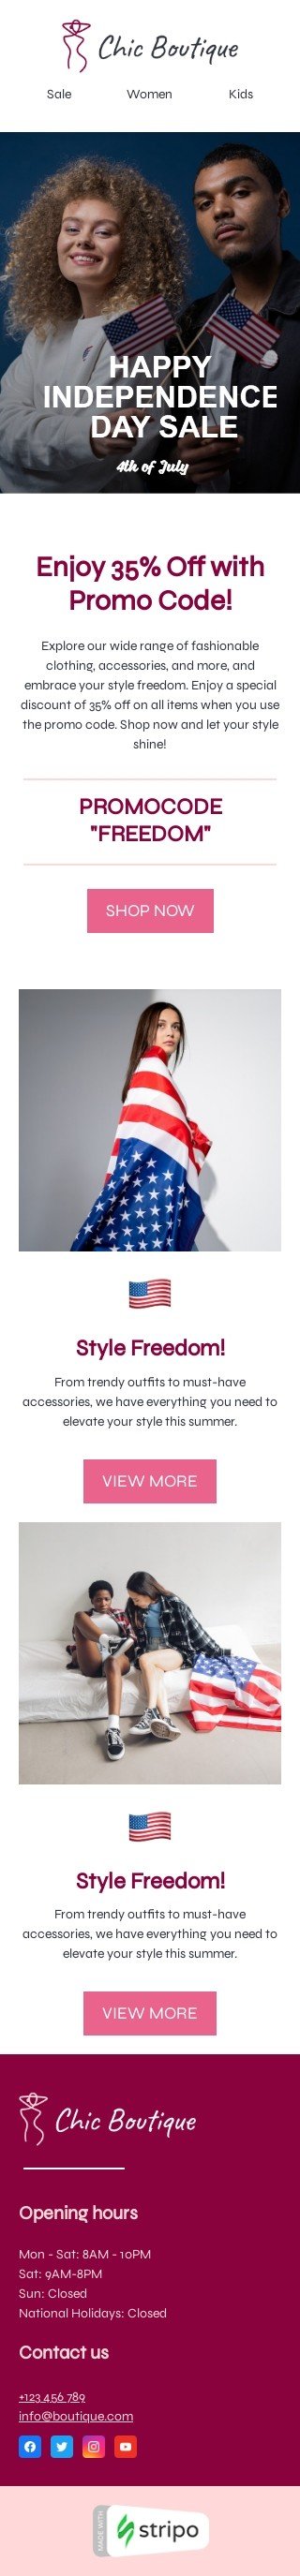 Independence Day E-Mail-Vorlage «Stilfreiheit» für Mode-Branche Ansicht auf Mobilgeräten